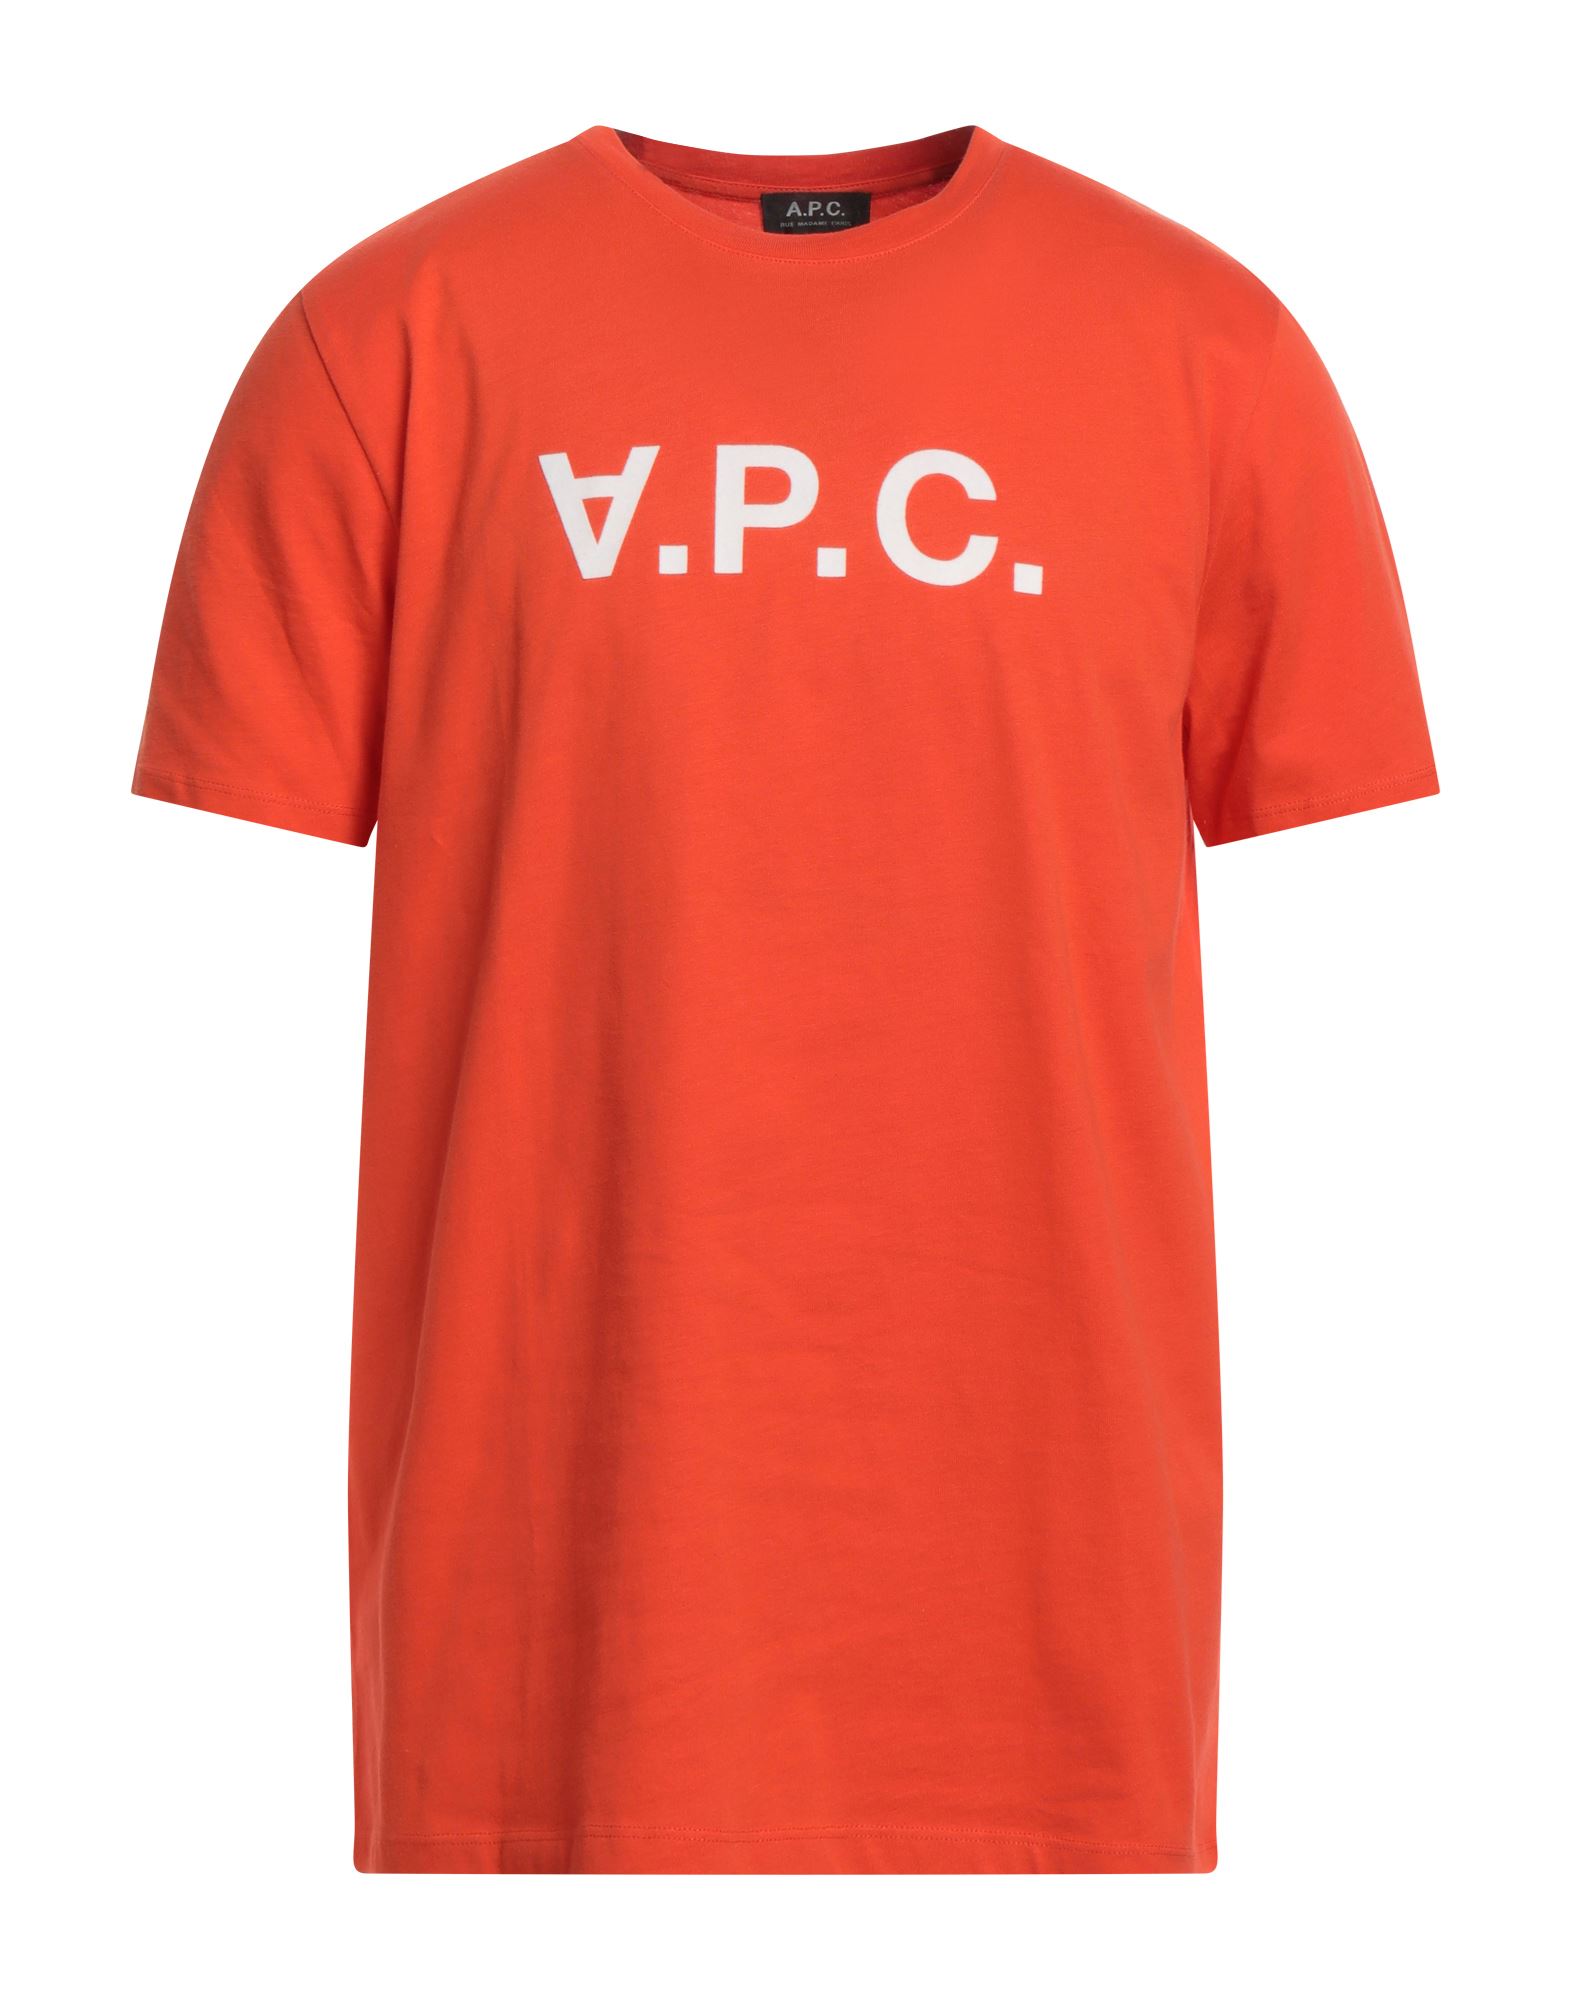 A.P.C. T-shirts Herren Orange von A.P.C.